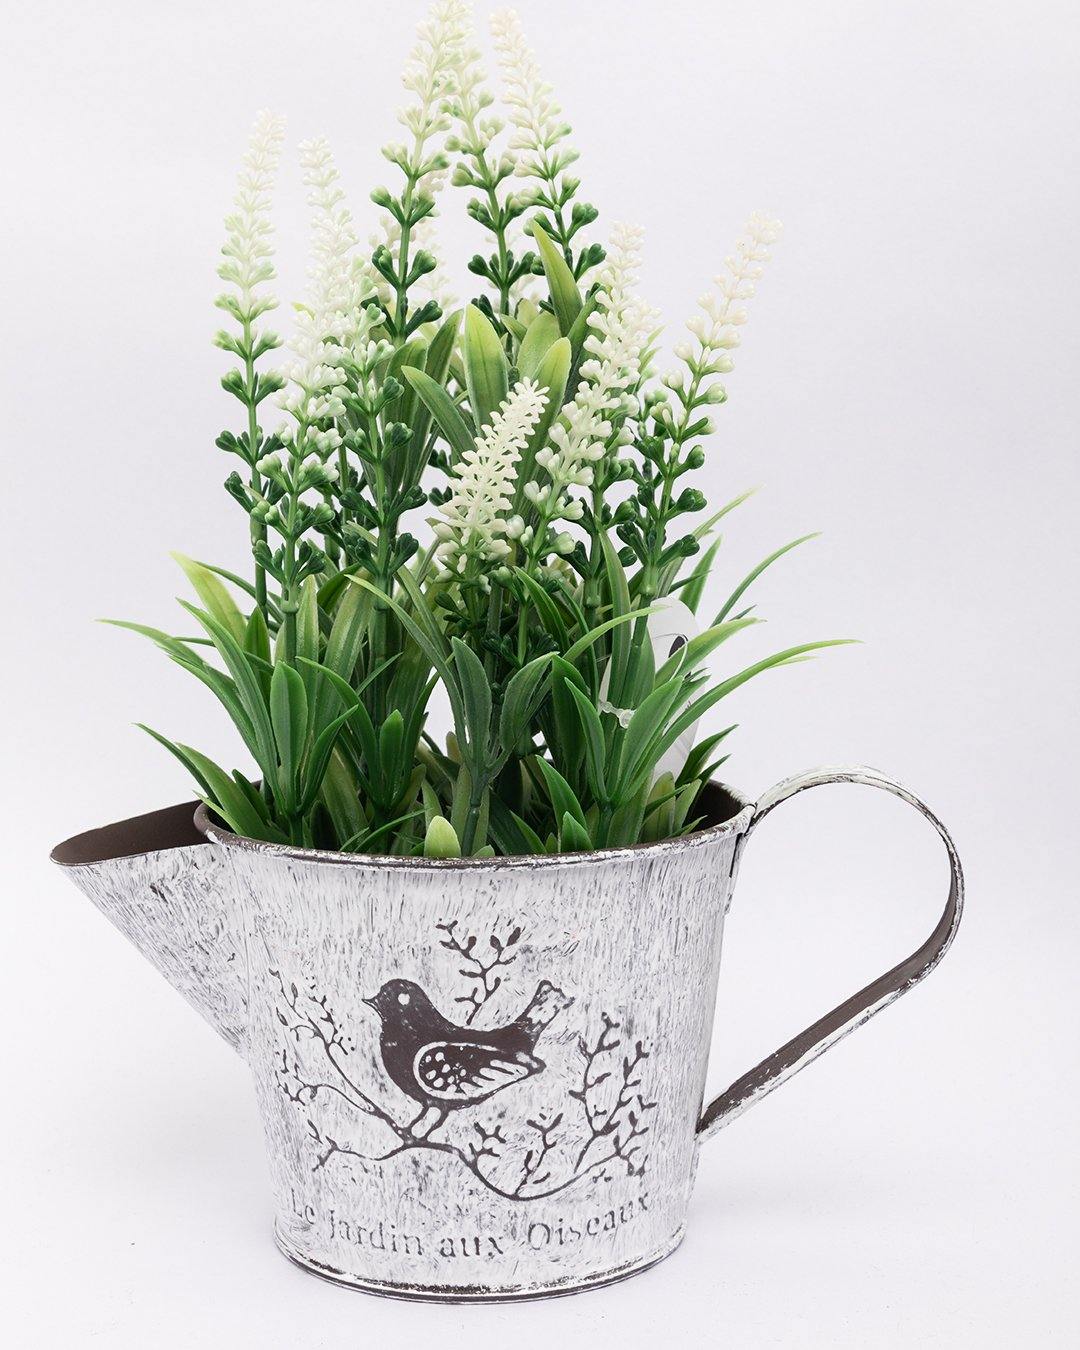 VON CASA Artificial Flower with Pot, White, Plastic & Iron